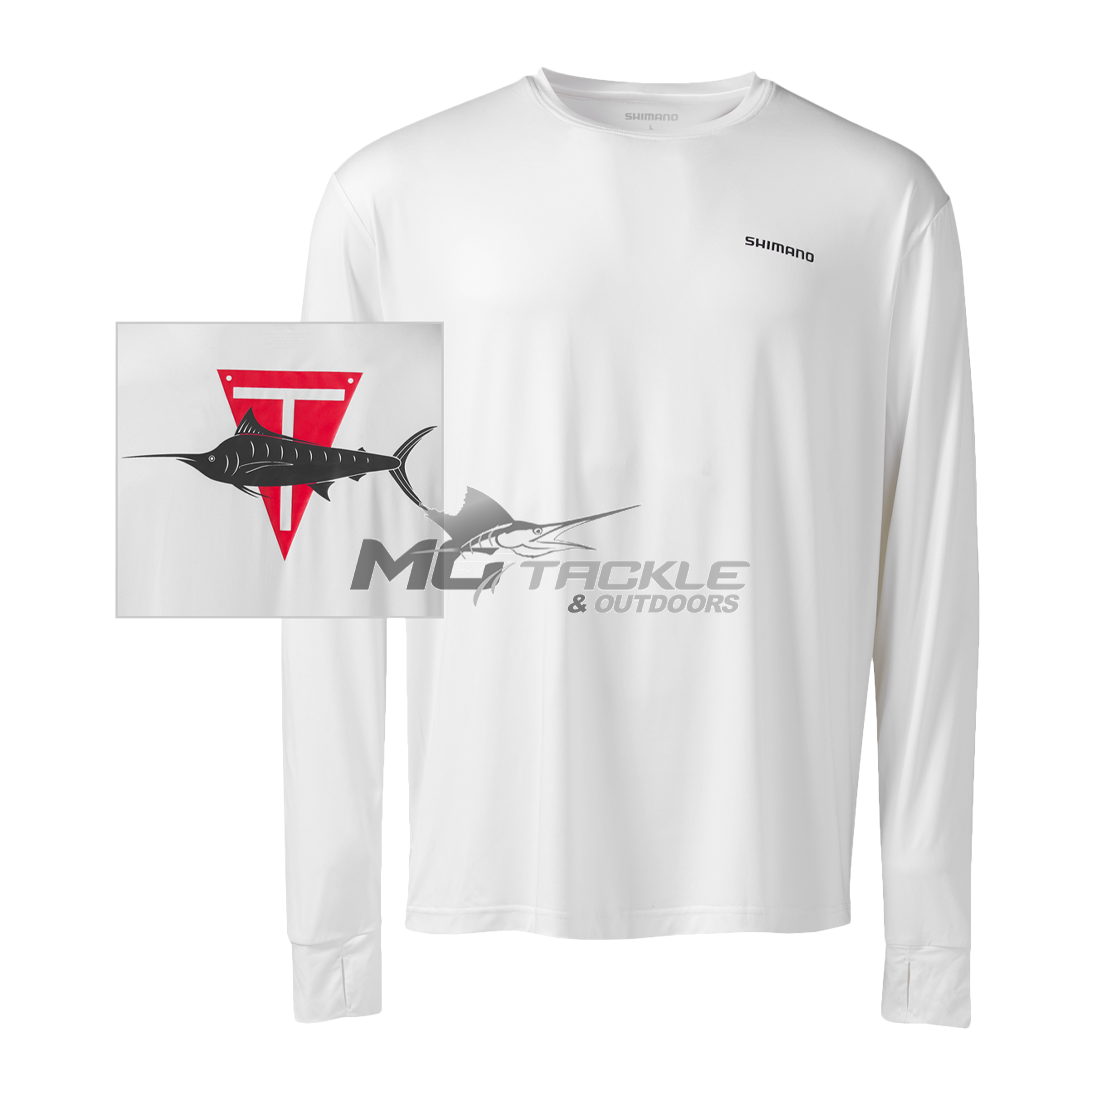 Shimano Tech Tee Long Sleeve Shirt